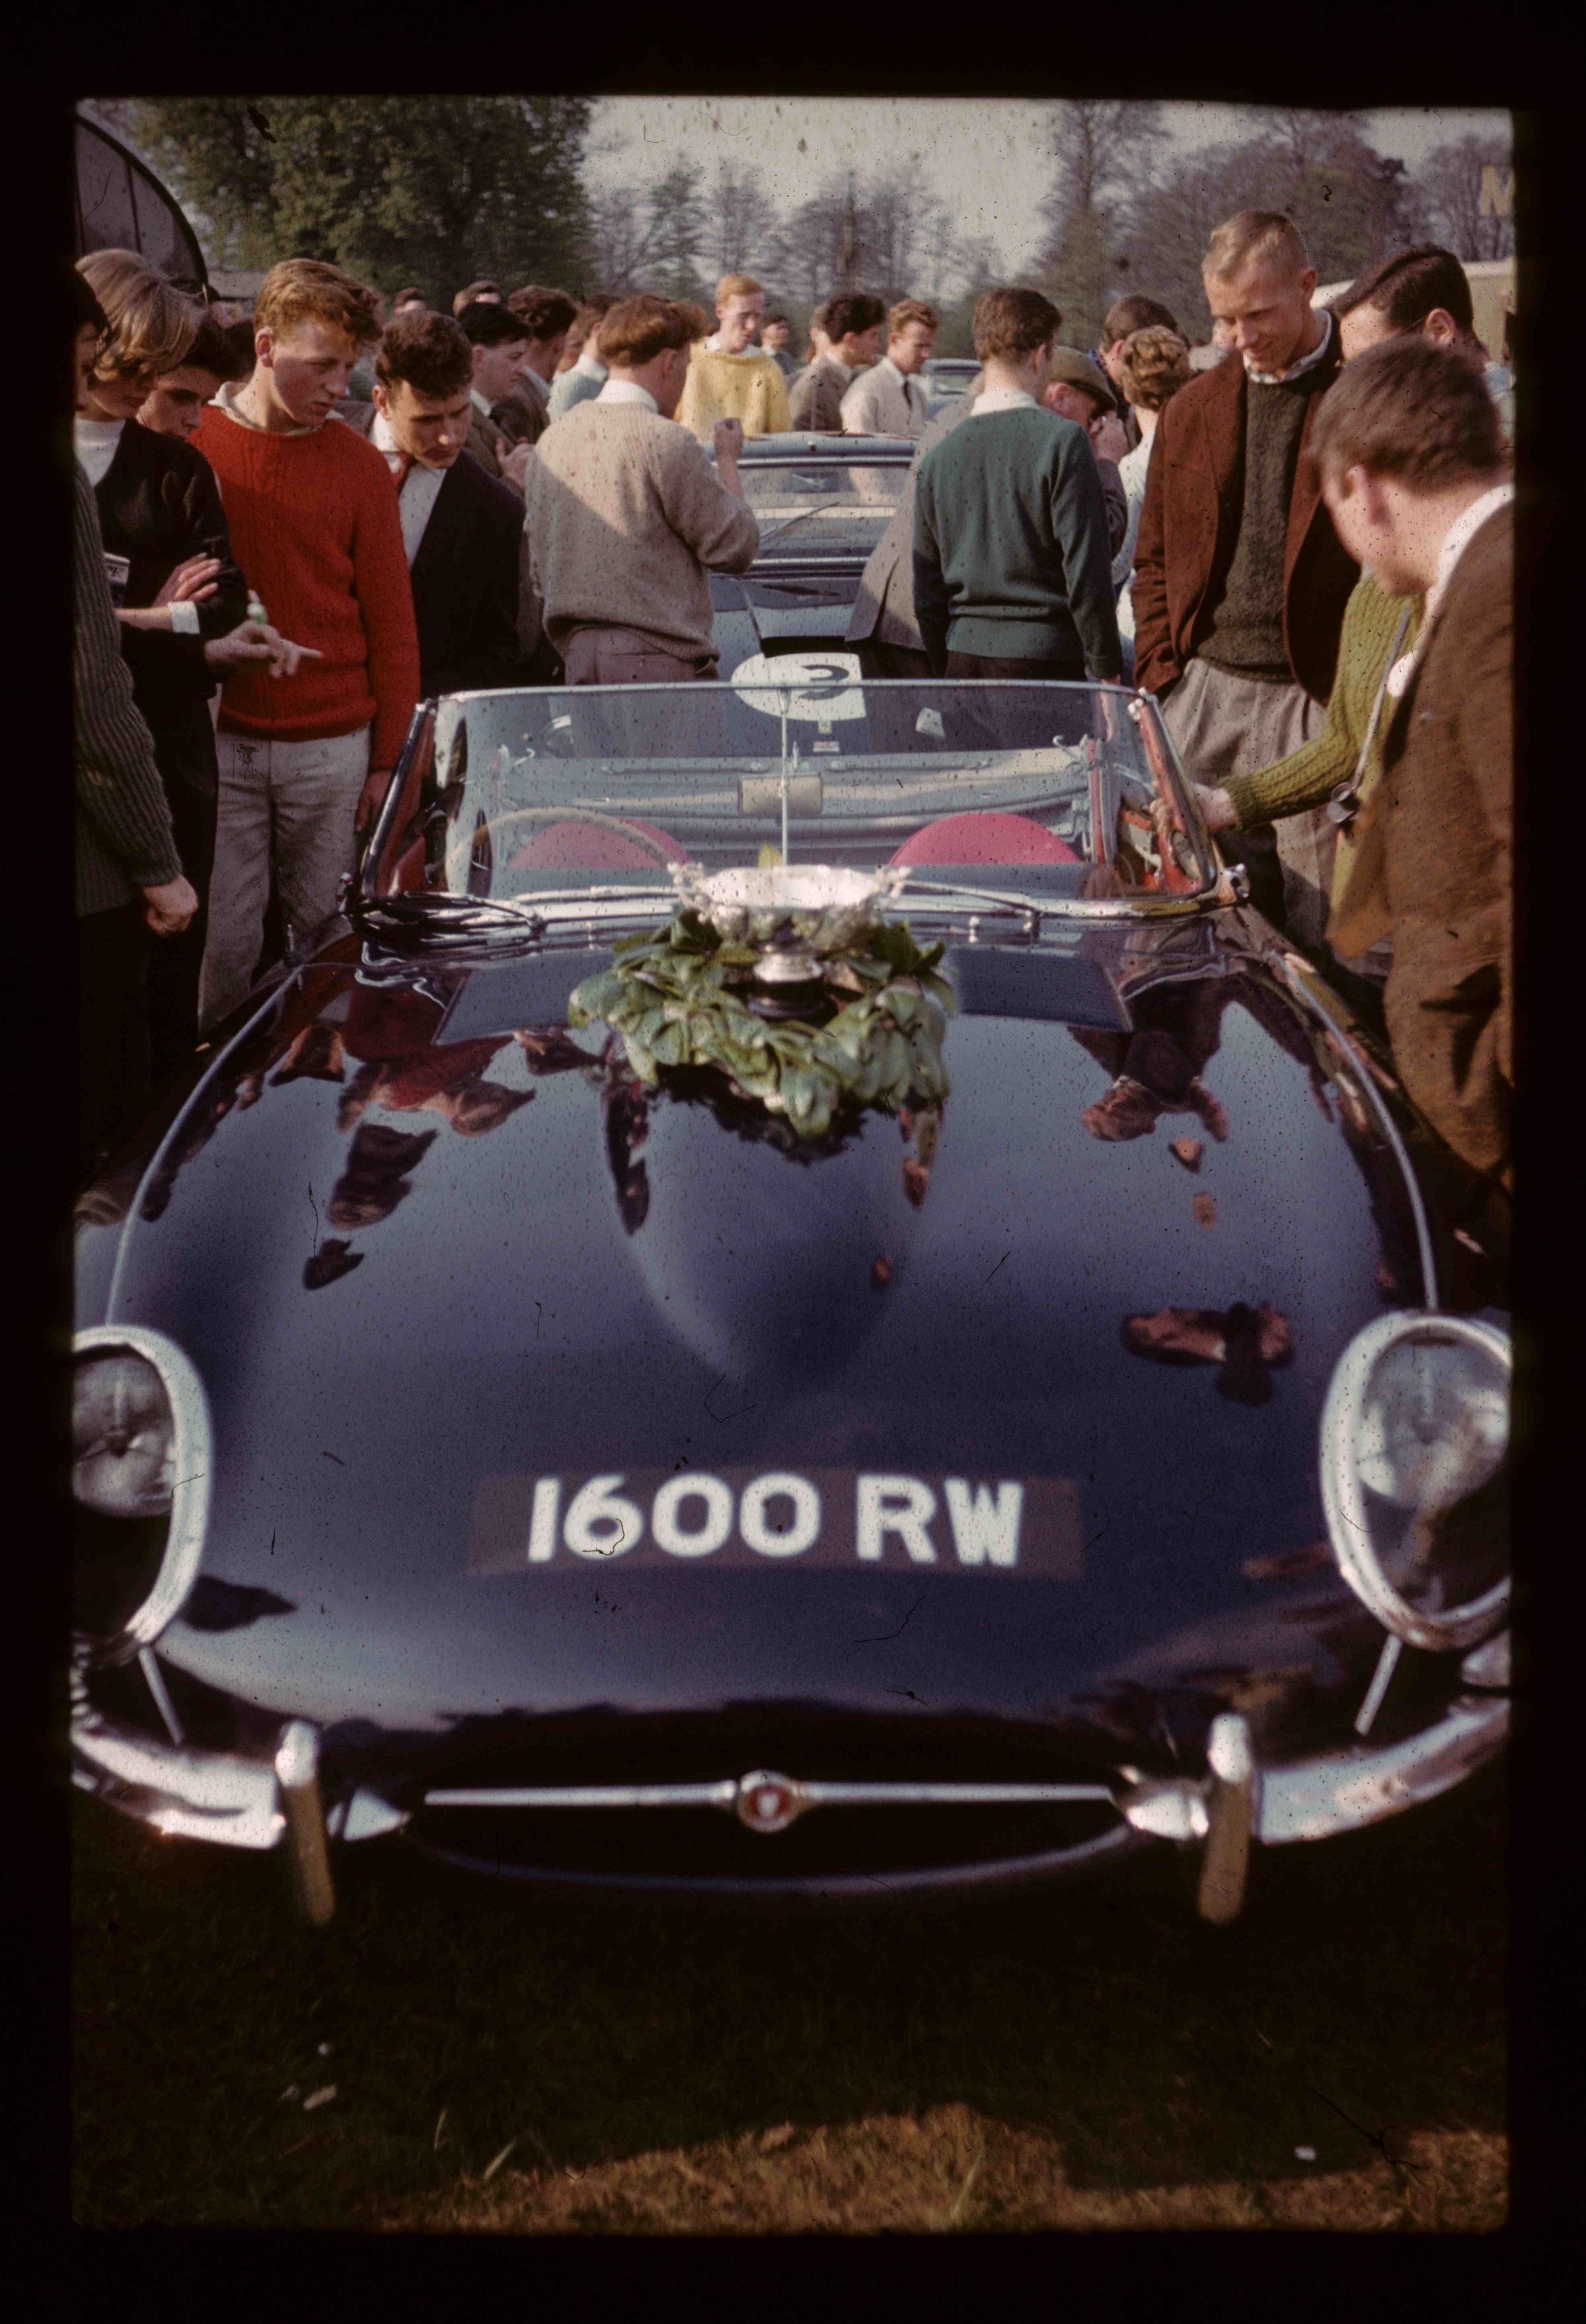 1600 RW Oulton Park April 15th 1961. Image: SWNS